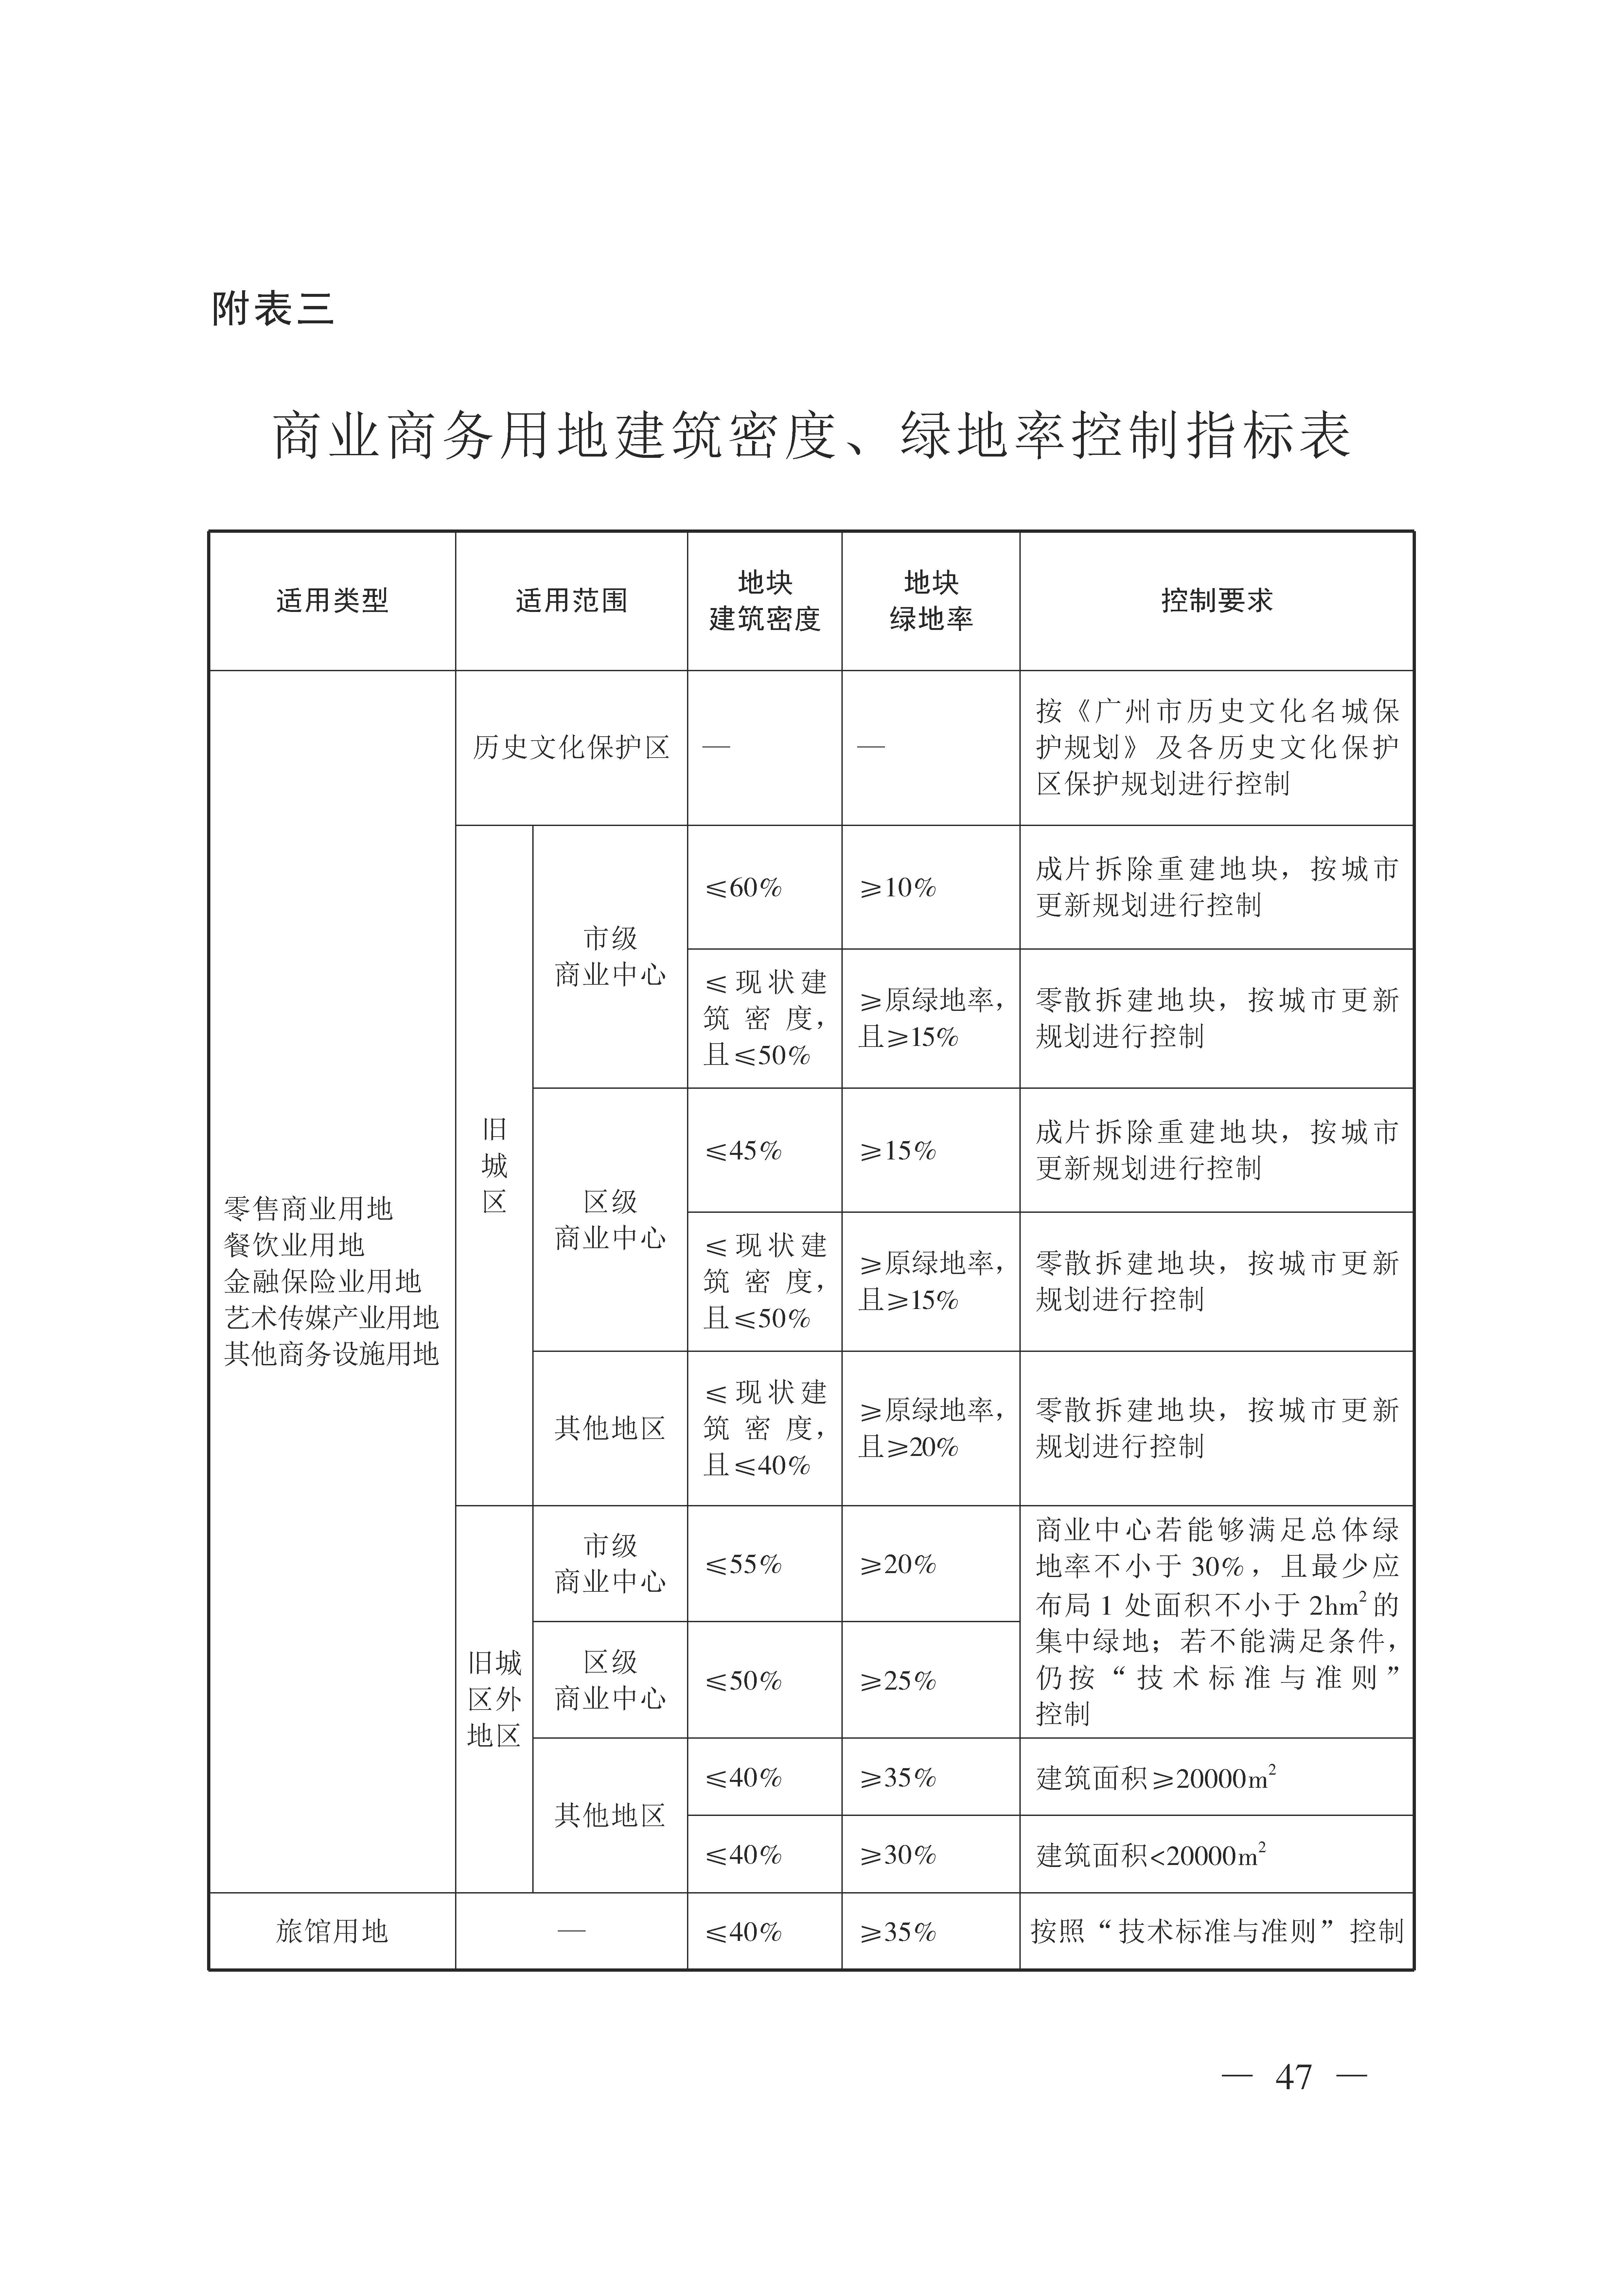 广州市城乡规划技术规定（政府令133号）_页面_47.jpg